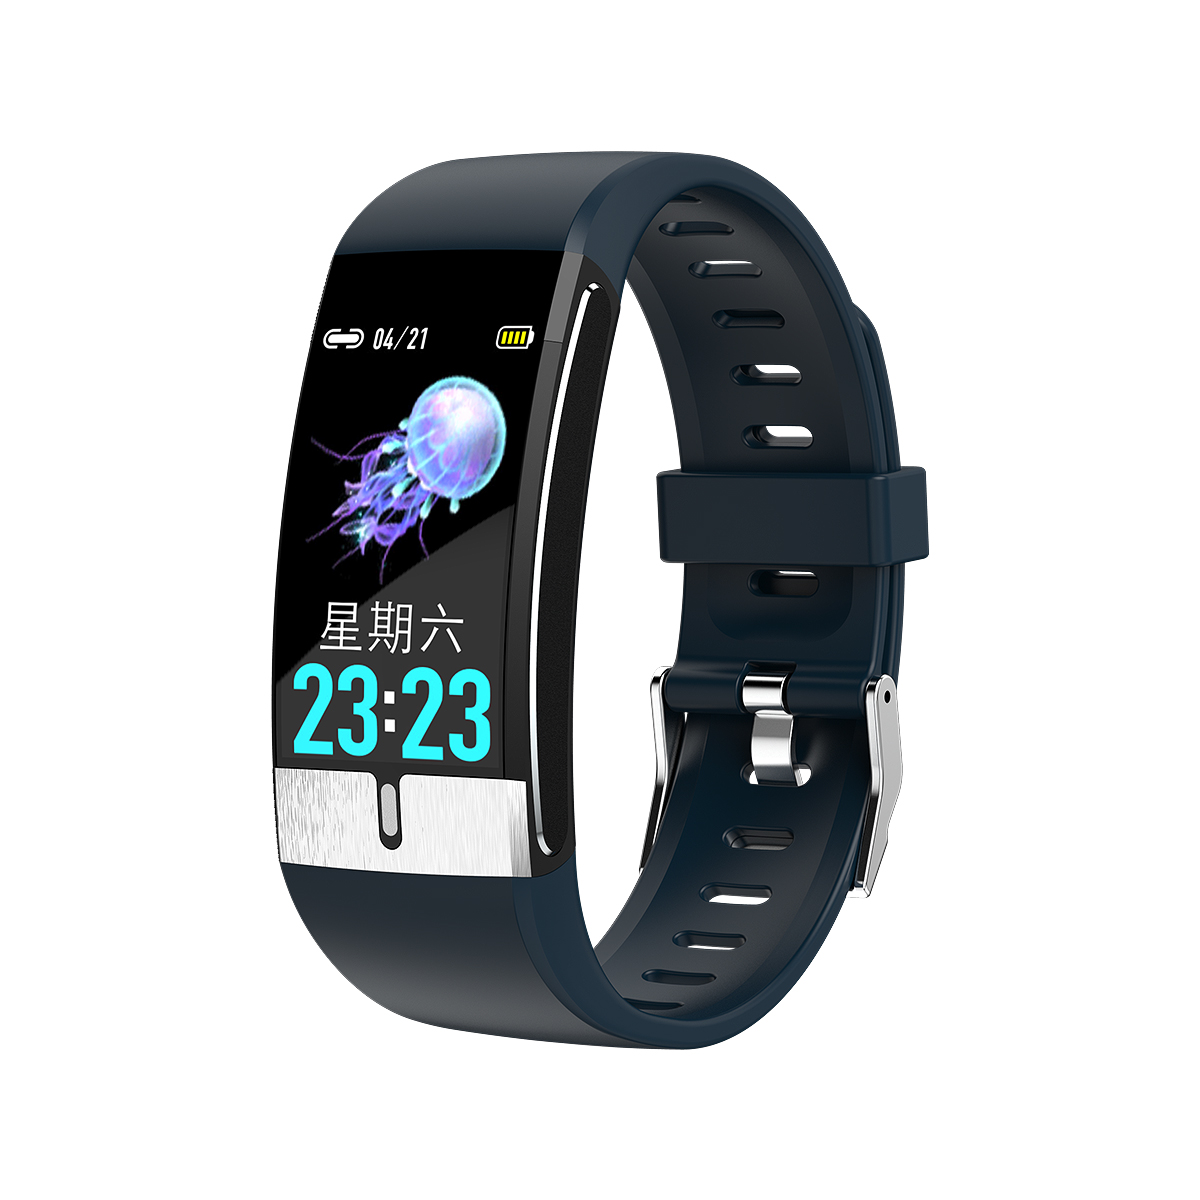 New Model IP68 Waterproof Bluetooth Body Temperature Smart Bracelet Watch E66